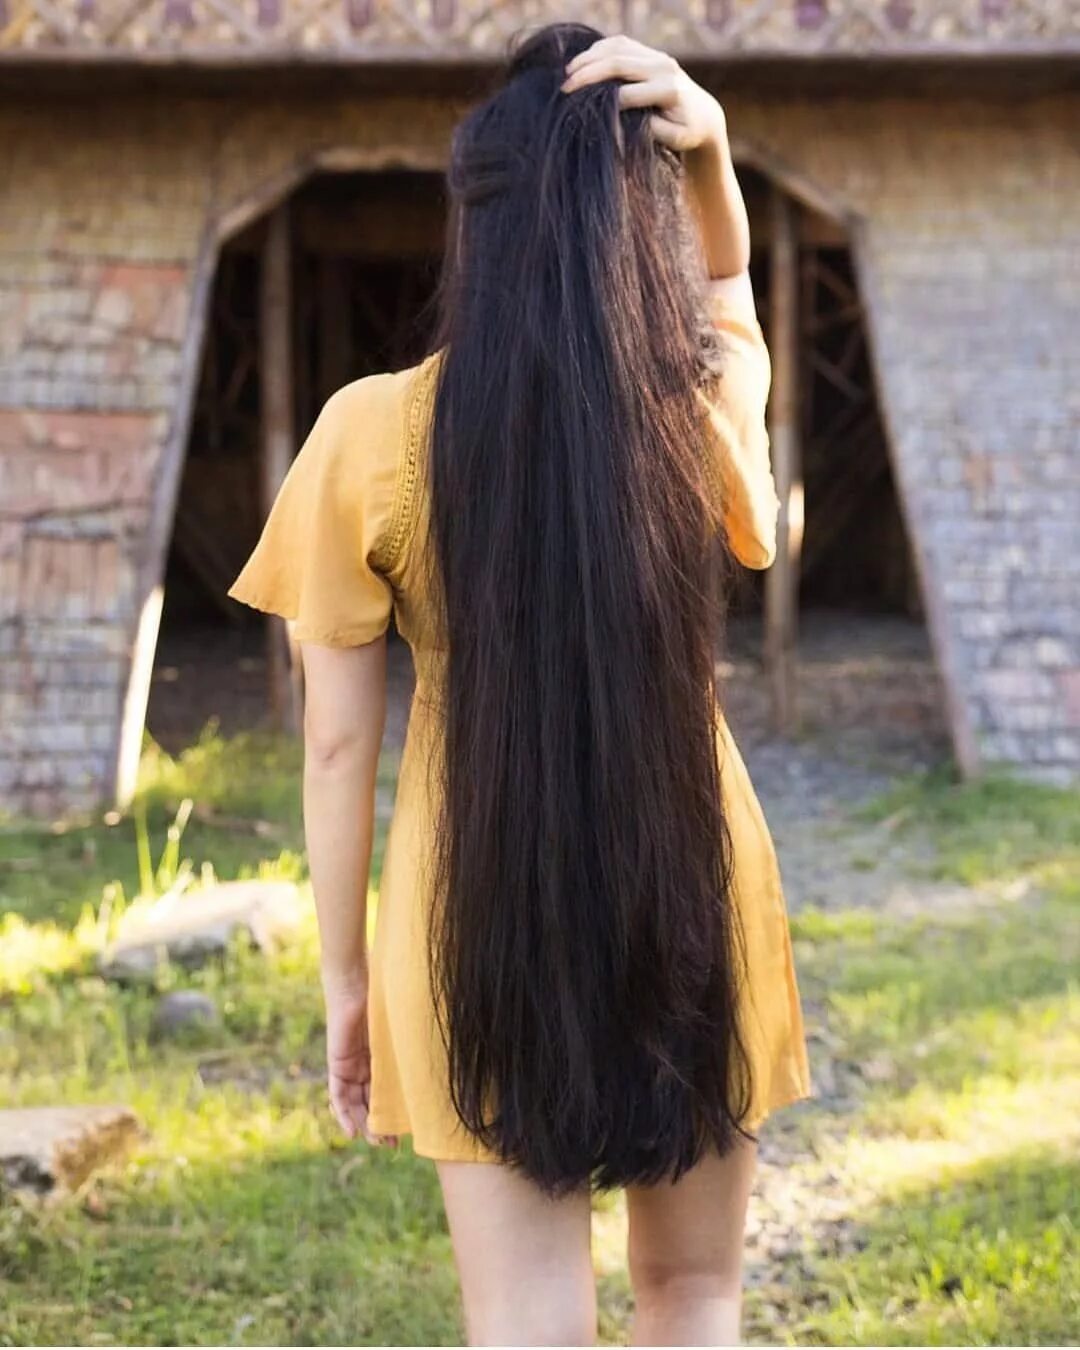 Long hair video. Очень длинные волосы. Девушки с очень длинными волосами. Девочка с очень длинными волосами. Длинные темные волосы.